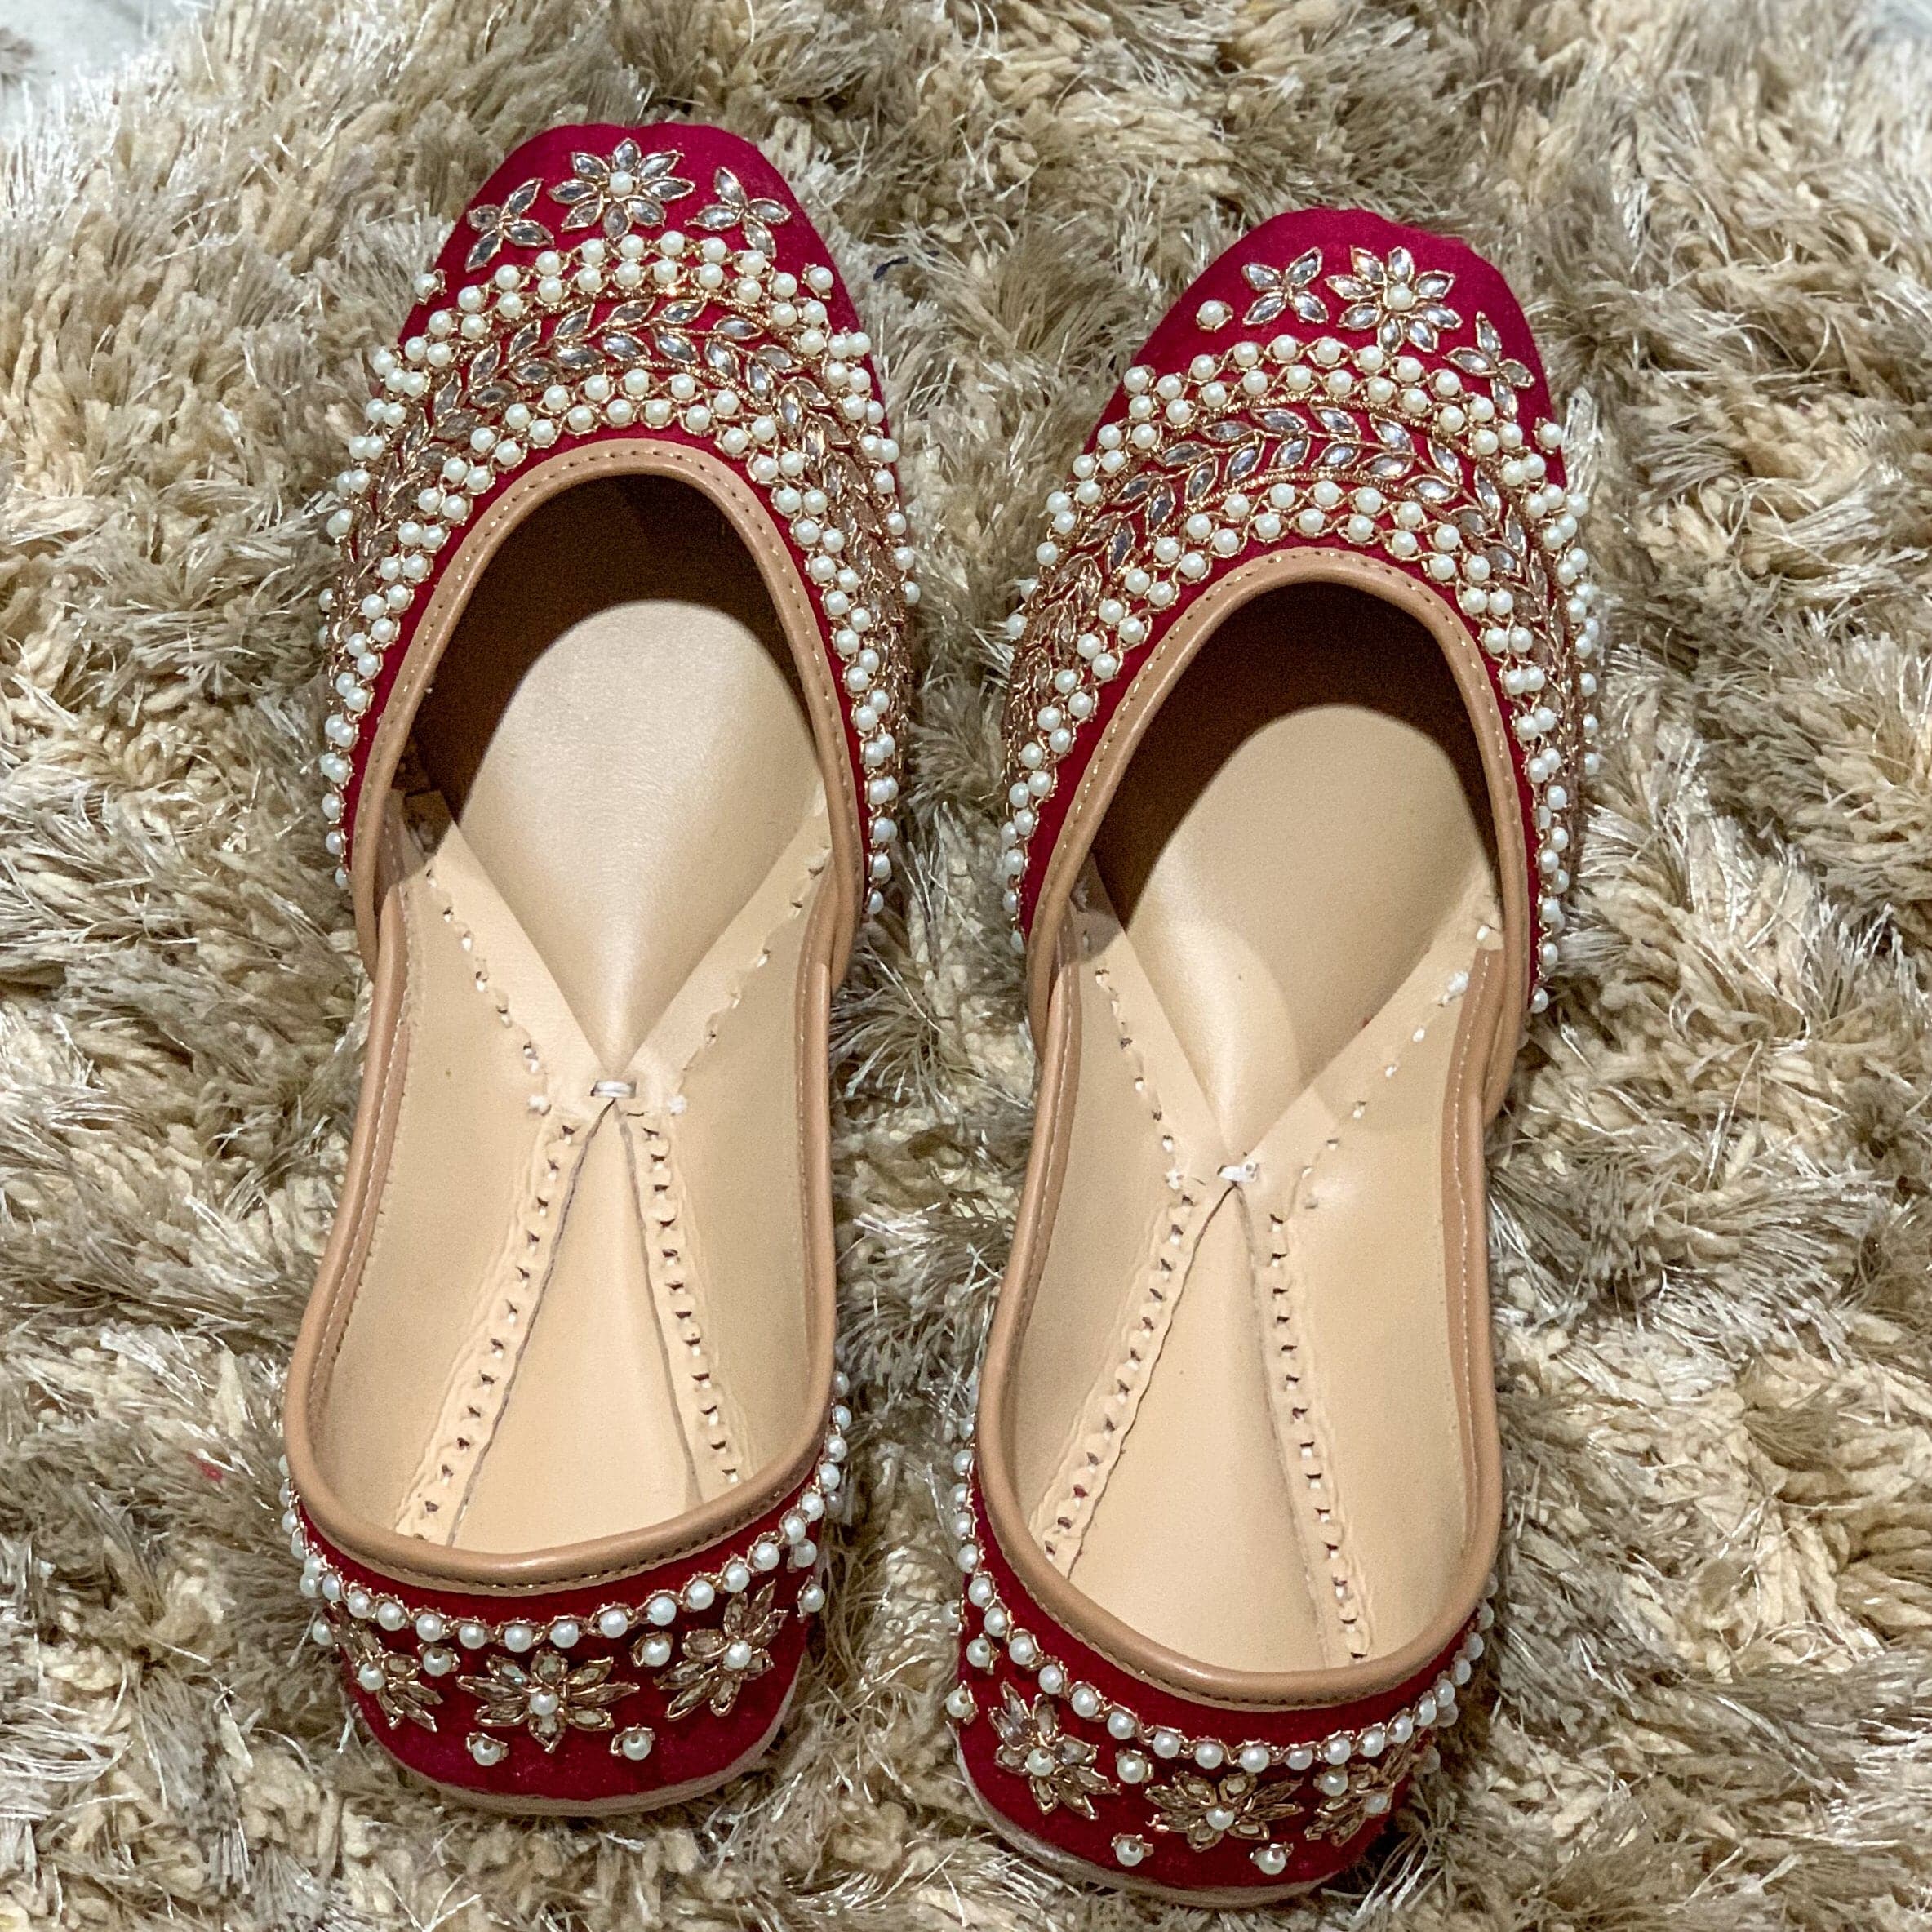 Indian footwear for women